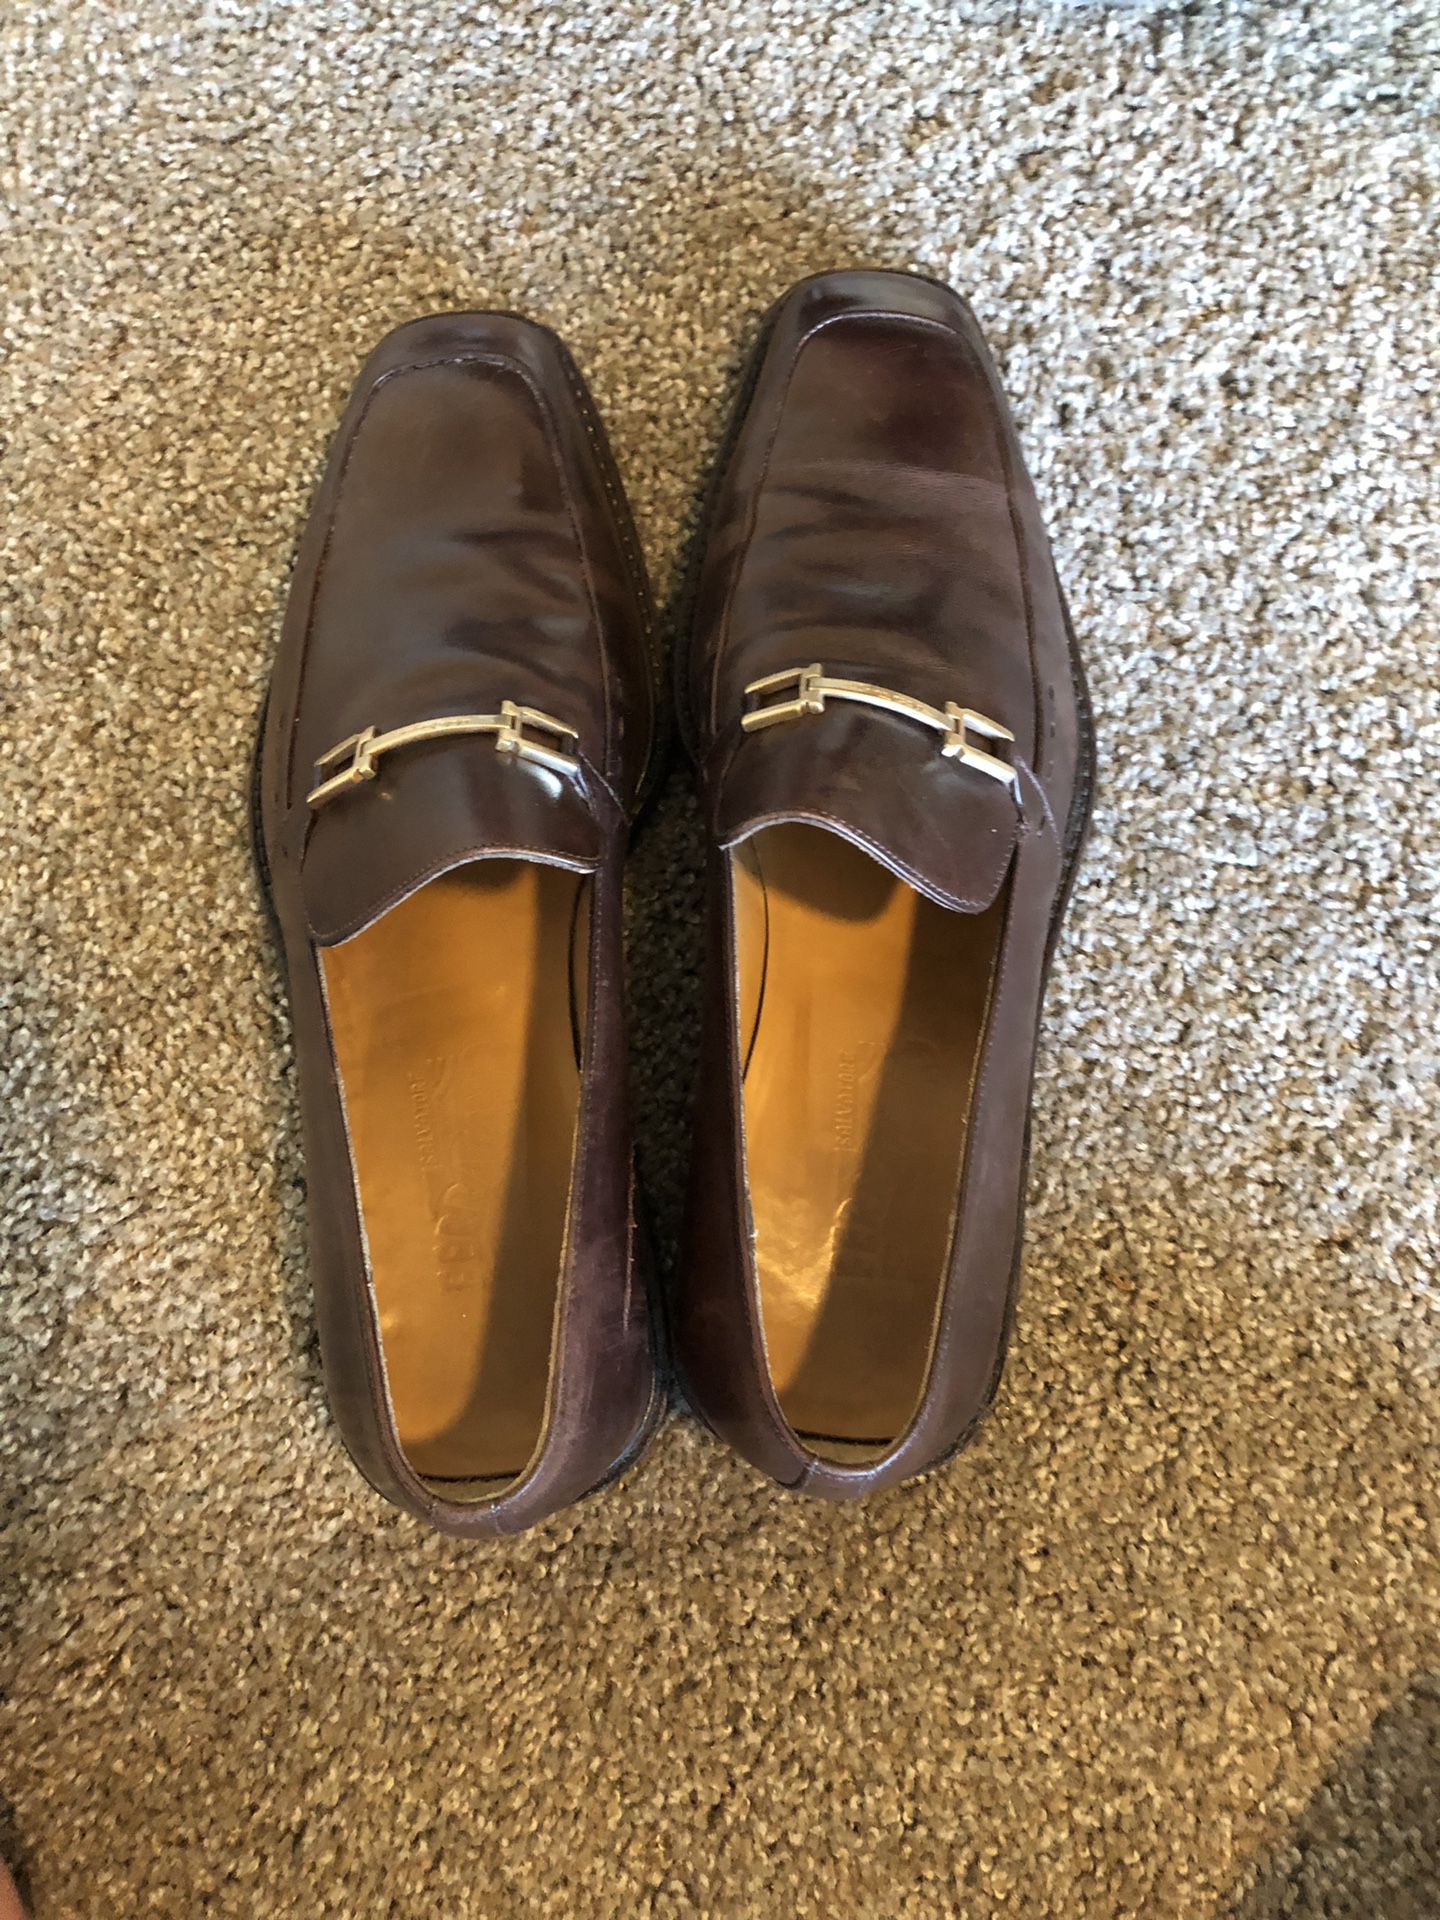 Salvatore Ferragamo leather loafers